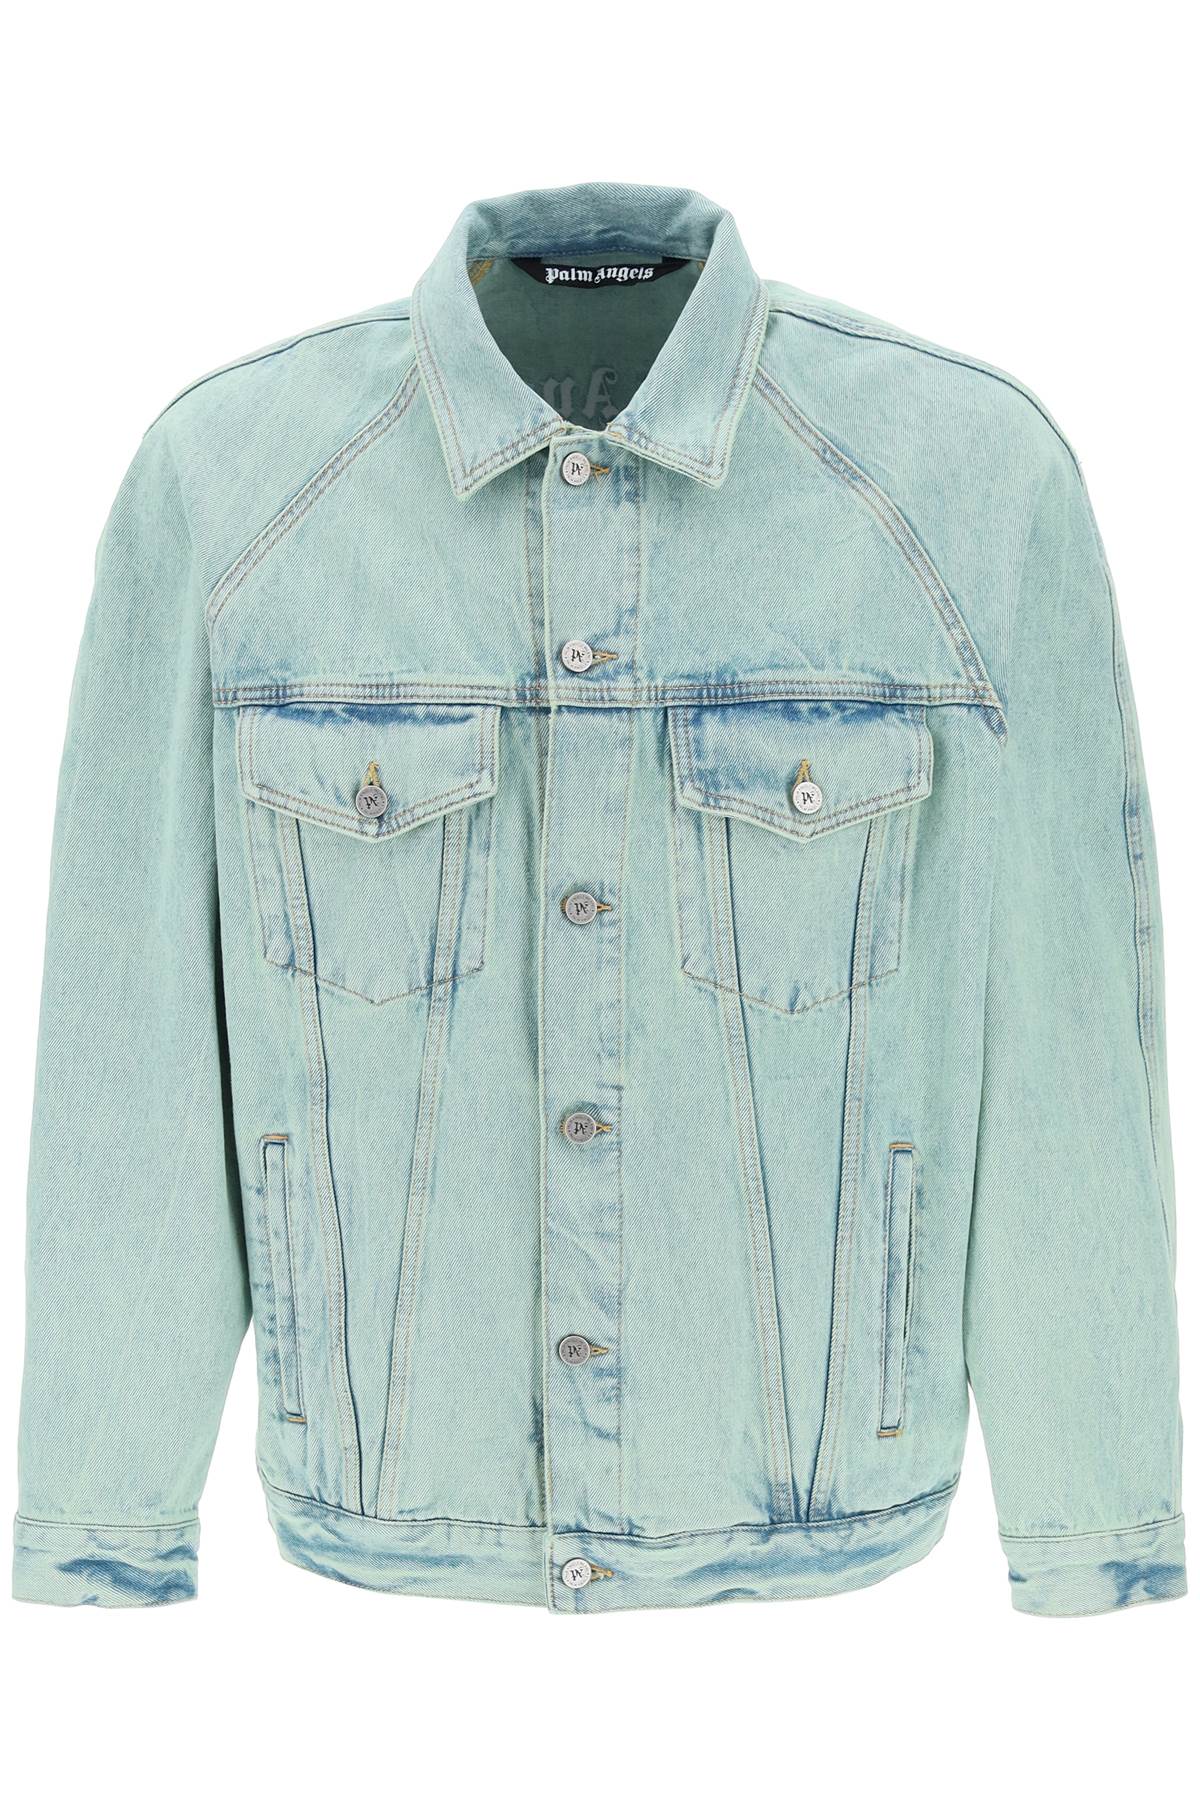 Áo khoác jeans xanh nhạt nam cho mùa Xuân Hè 24